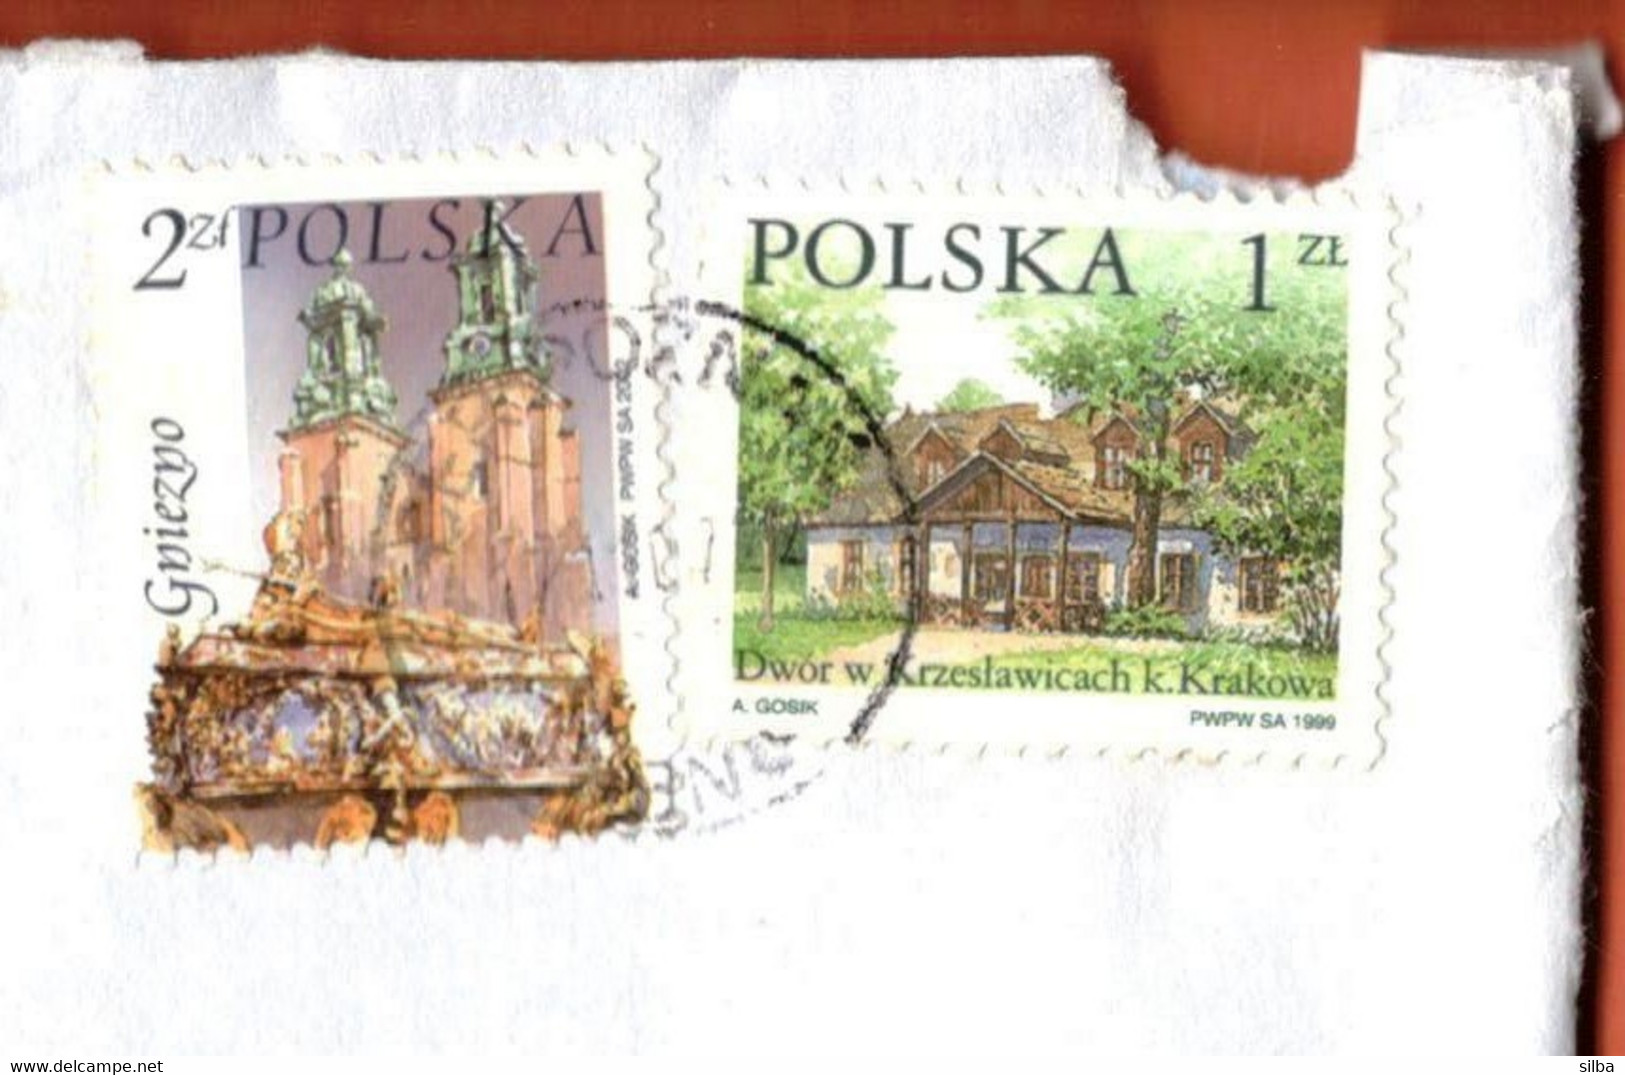 Poland Poznan 2007 / 1999 Polish Manor House Krzeslawice Krakow 1 ZL, 2002 Gniezno 2 ZL - Covers & Documents